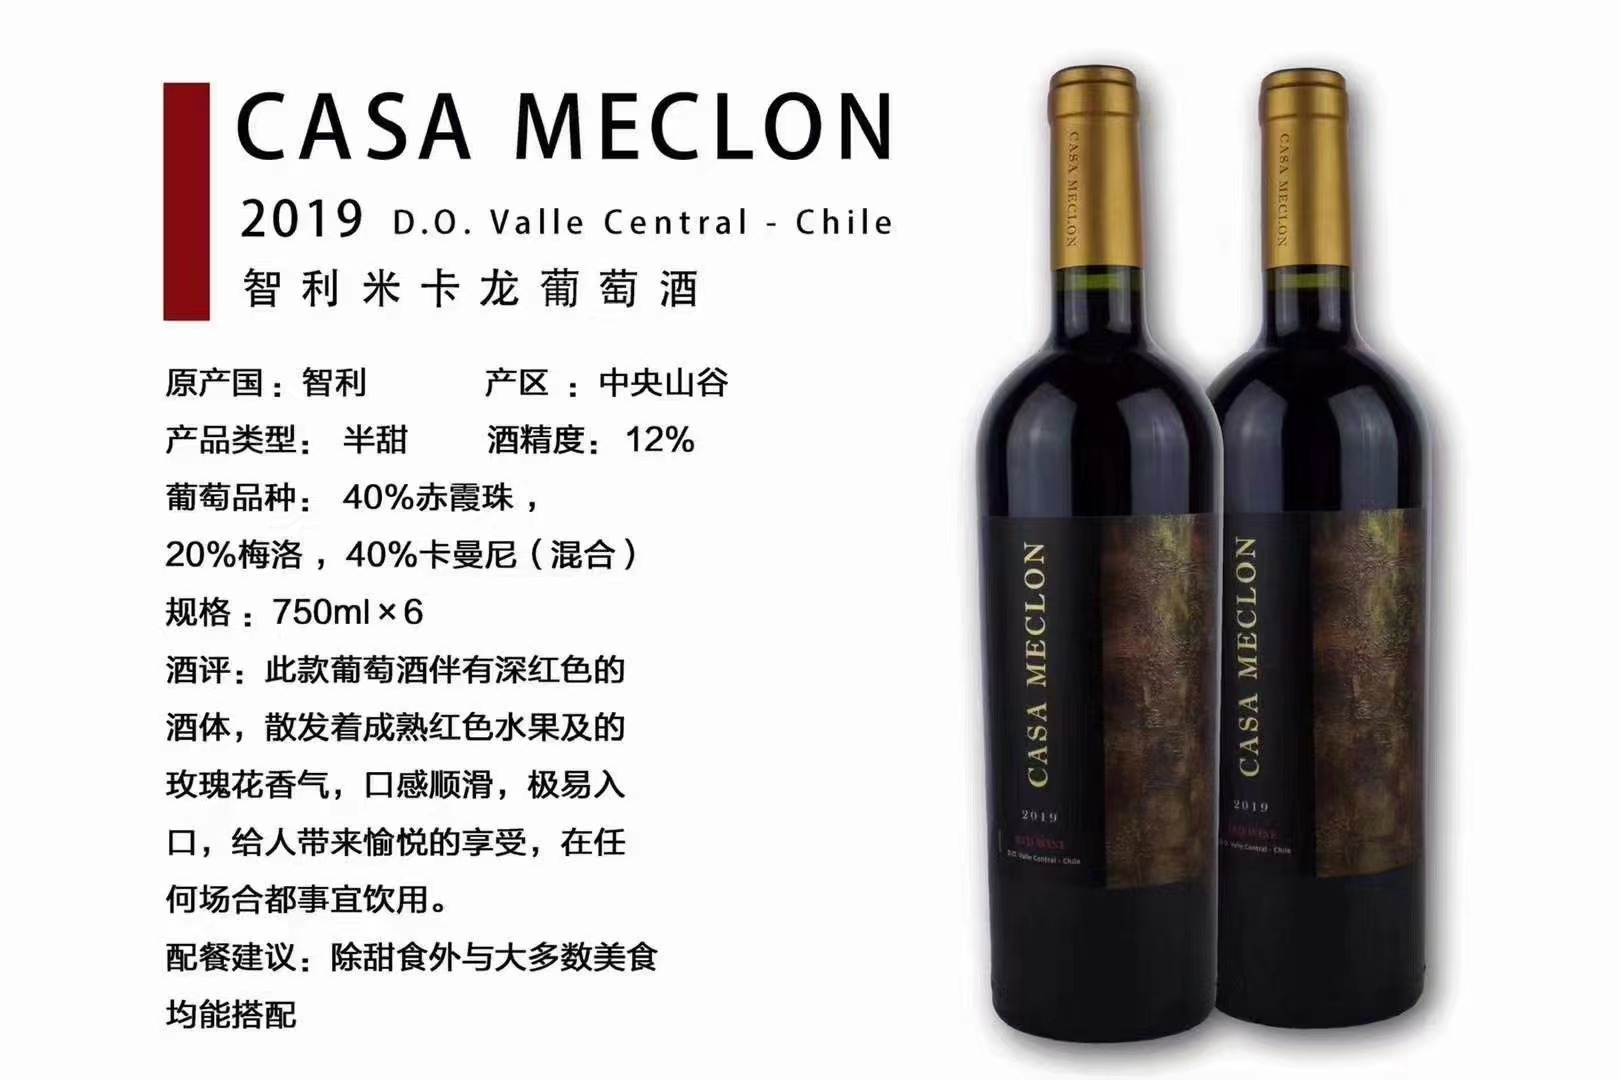 智利原瓶进口米卡龙葡萄酒进口商批发代理一件代发